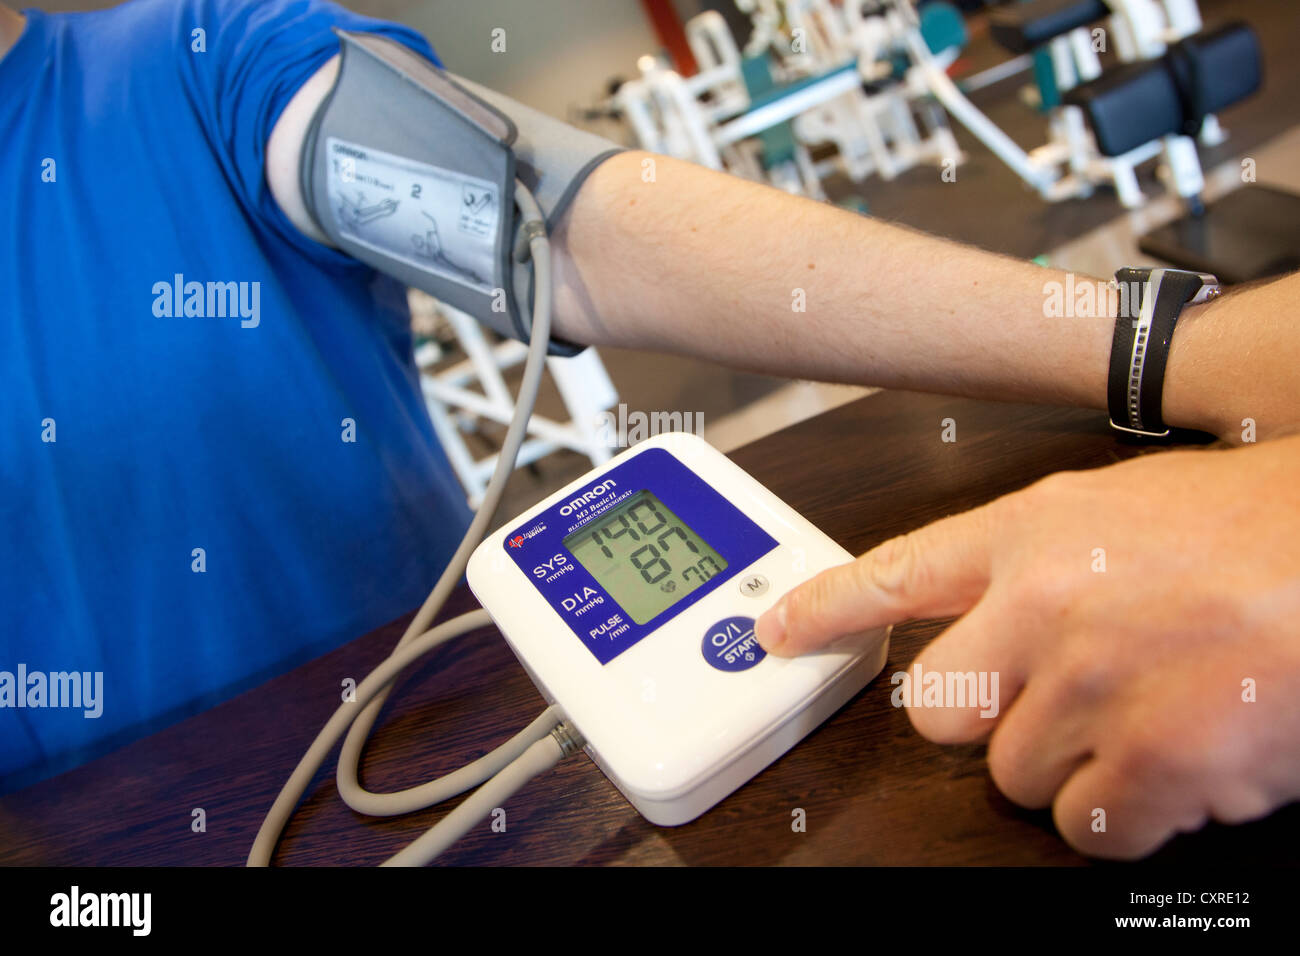 Monitor per la frequenza cardiaca, la misurazione della pressione sanguigna, prima di un allenamento presso il centro fitness, Regensburg, Baviera, Germania, Europa Foto Stock